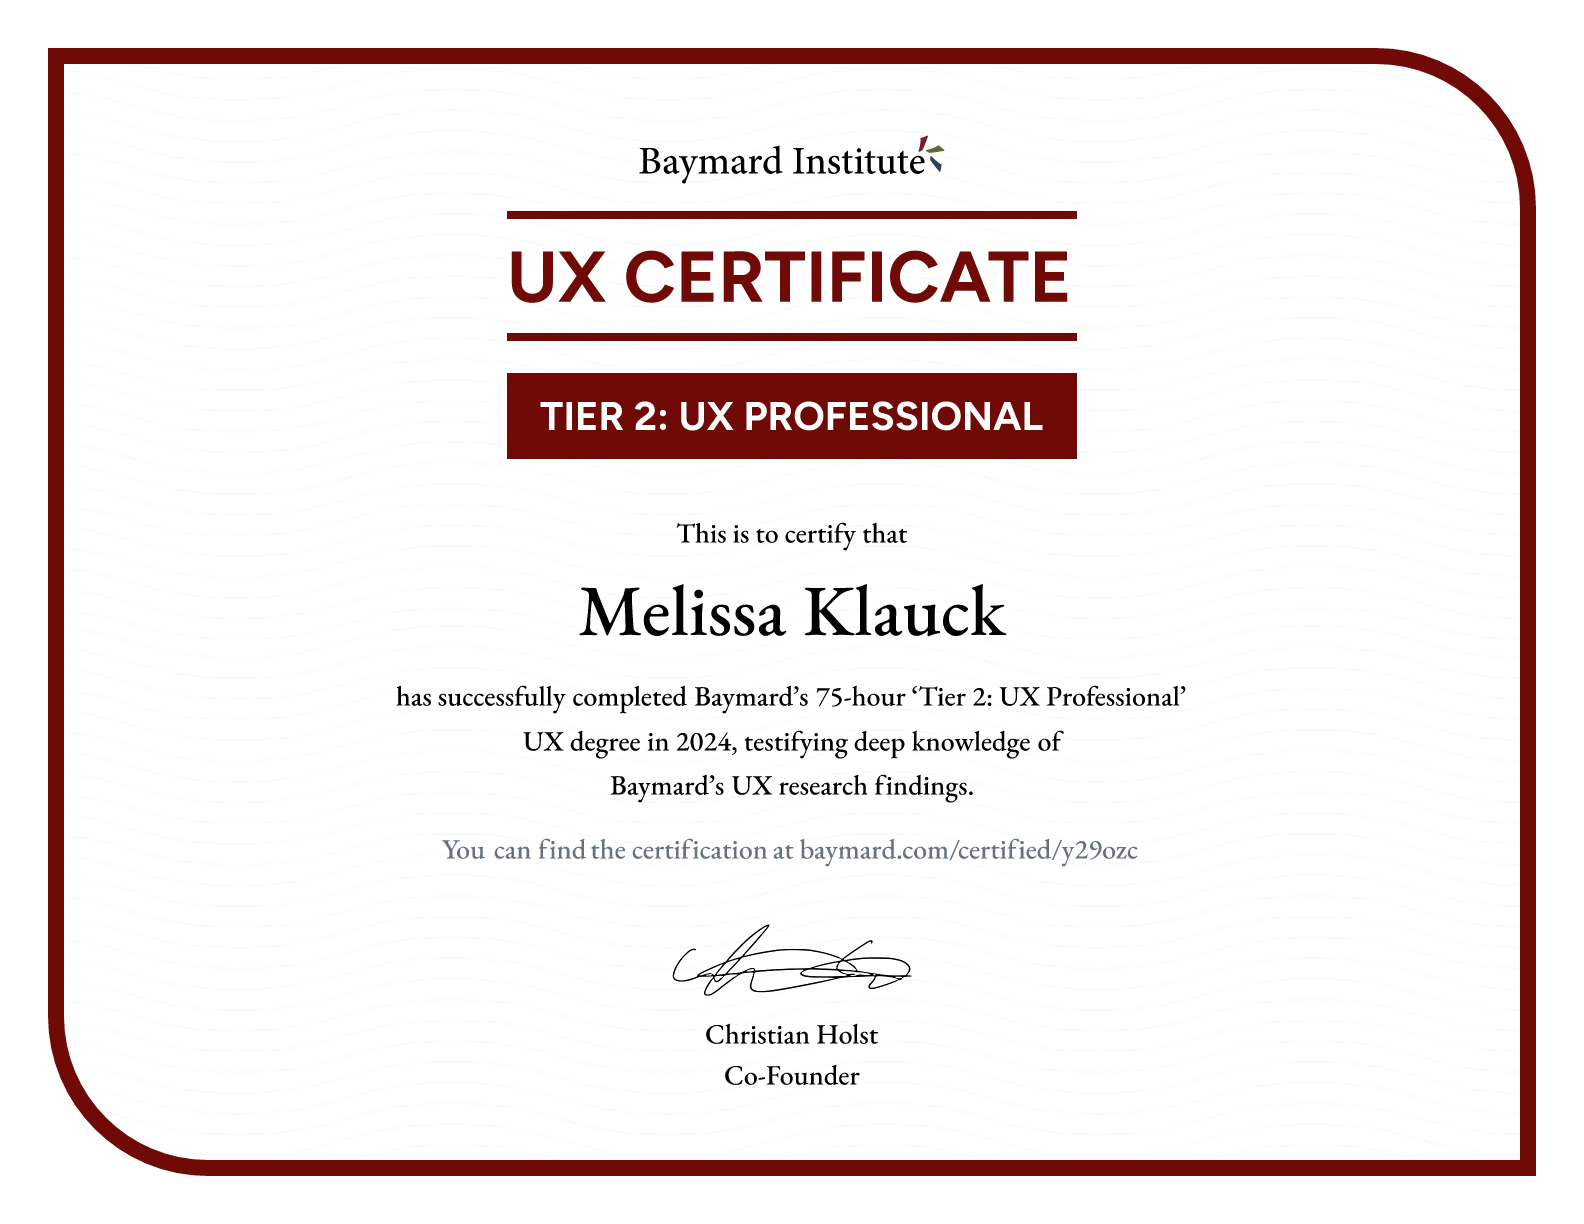 Melissa Klauck’s certificate